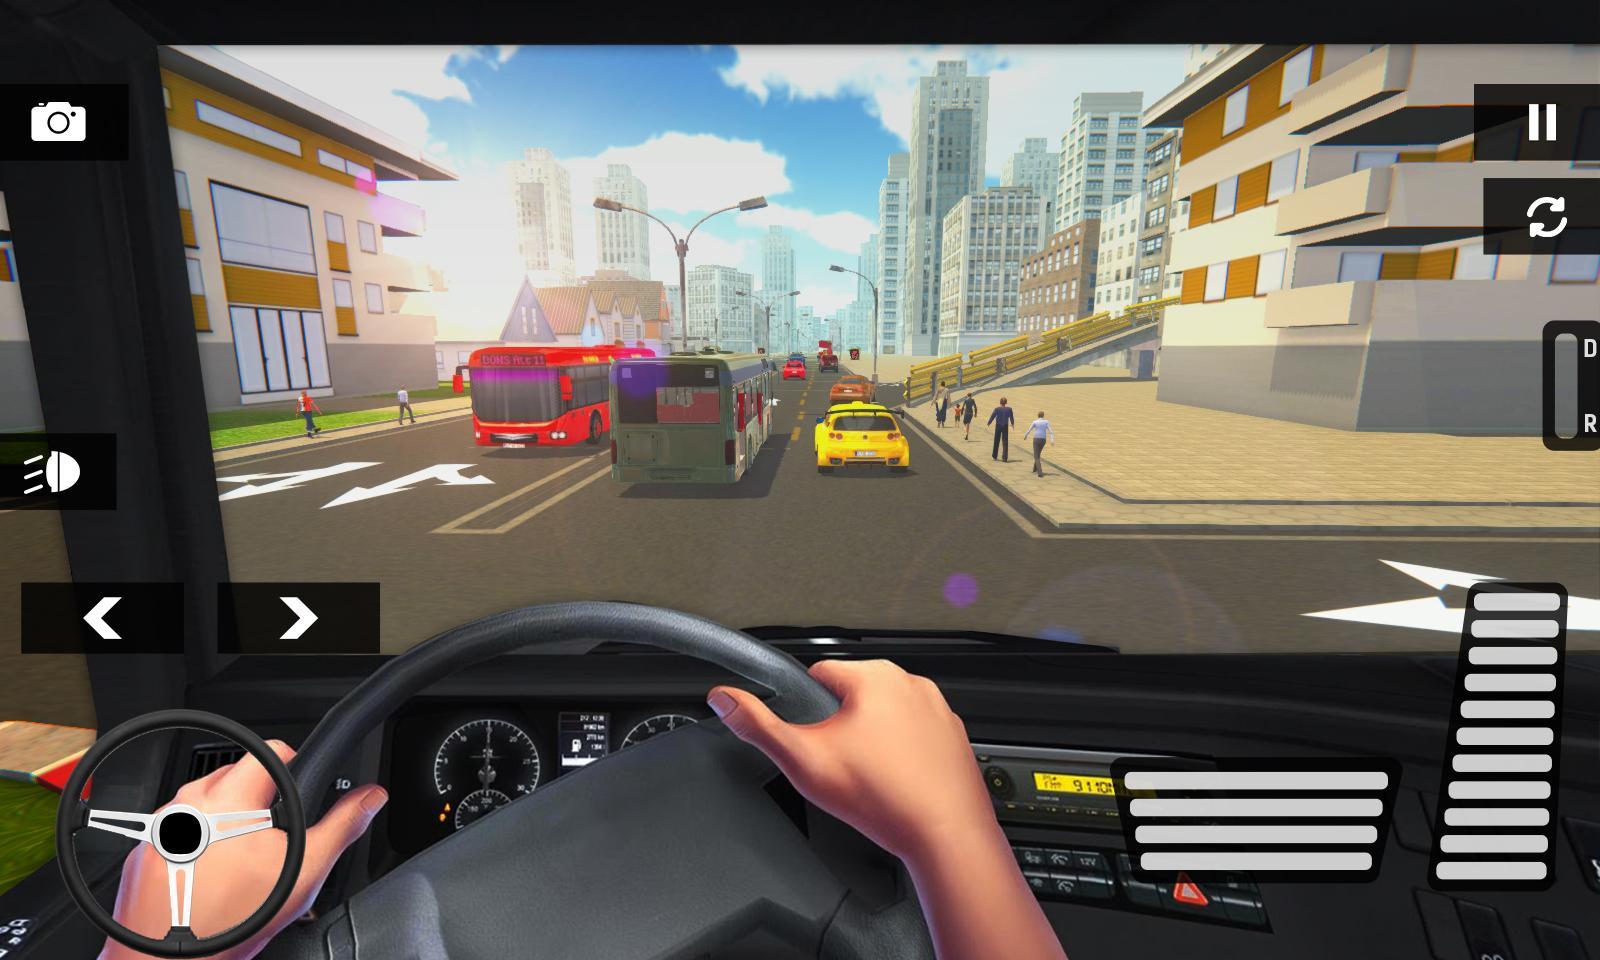 Играть бесплатные игры симулятор вождения. Test Drive 93 симулятор вождения. Симулятор вождения Coash. Автобус симулятор вождения скрины. Симулятор вождения андроид Интерфейс.